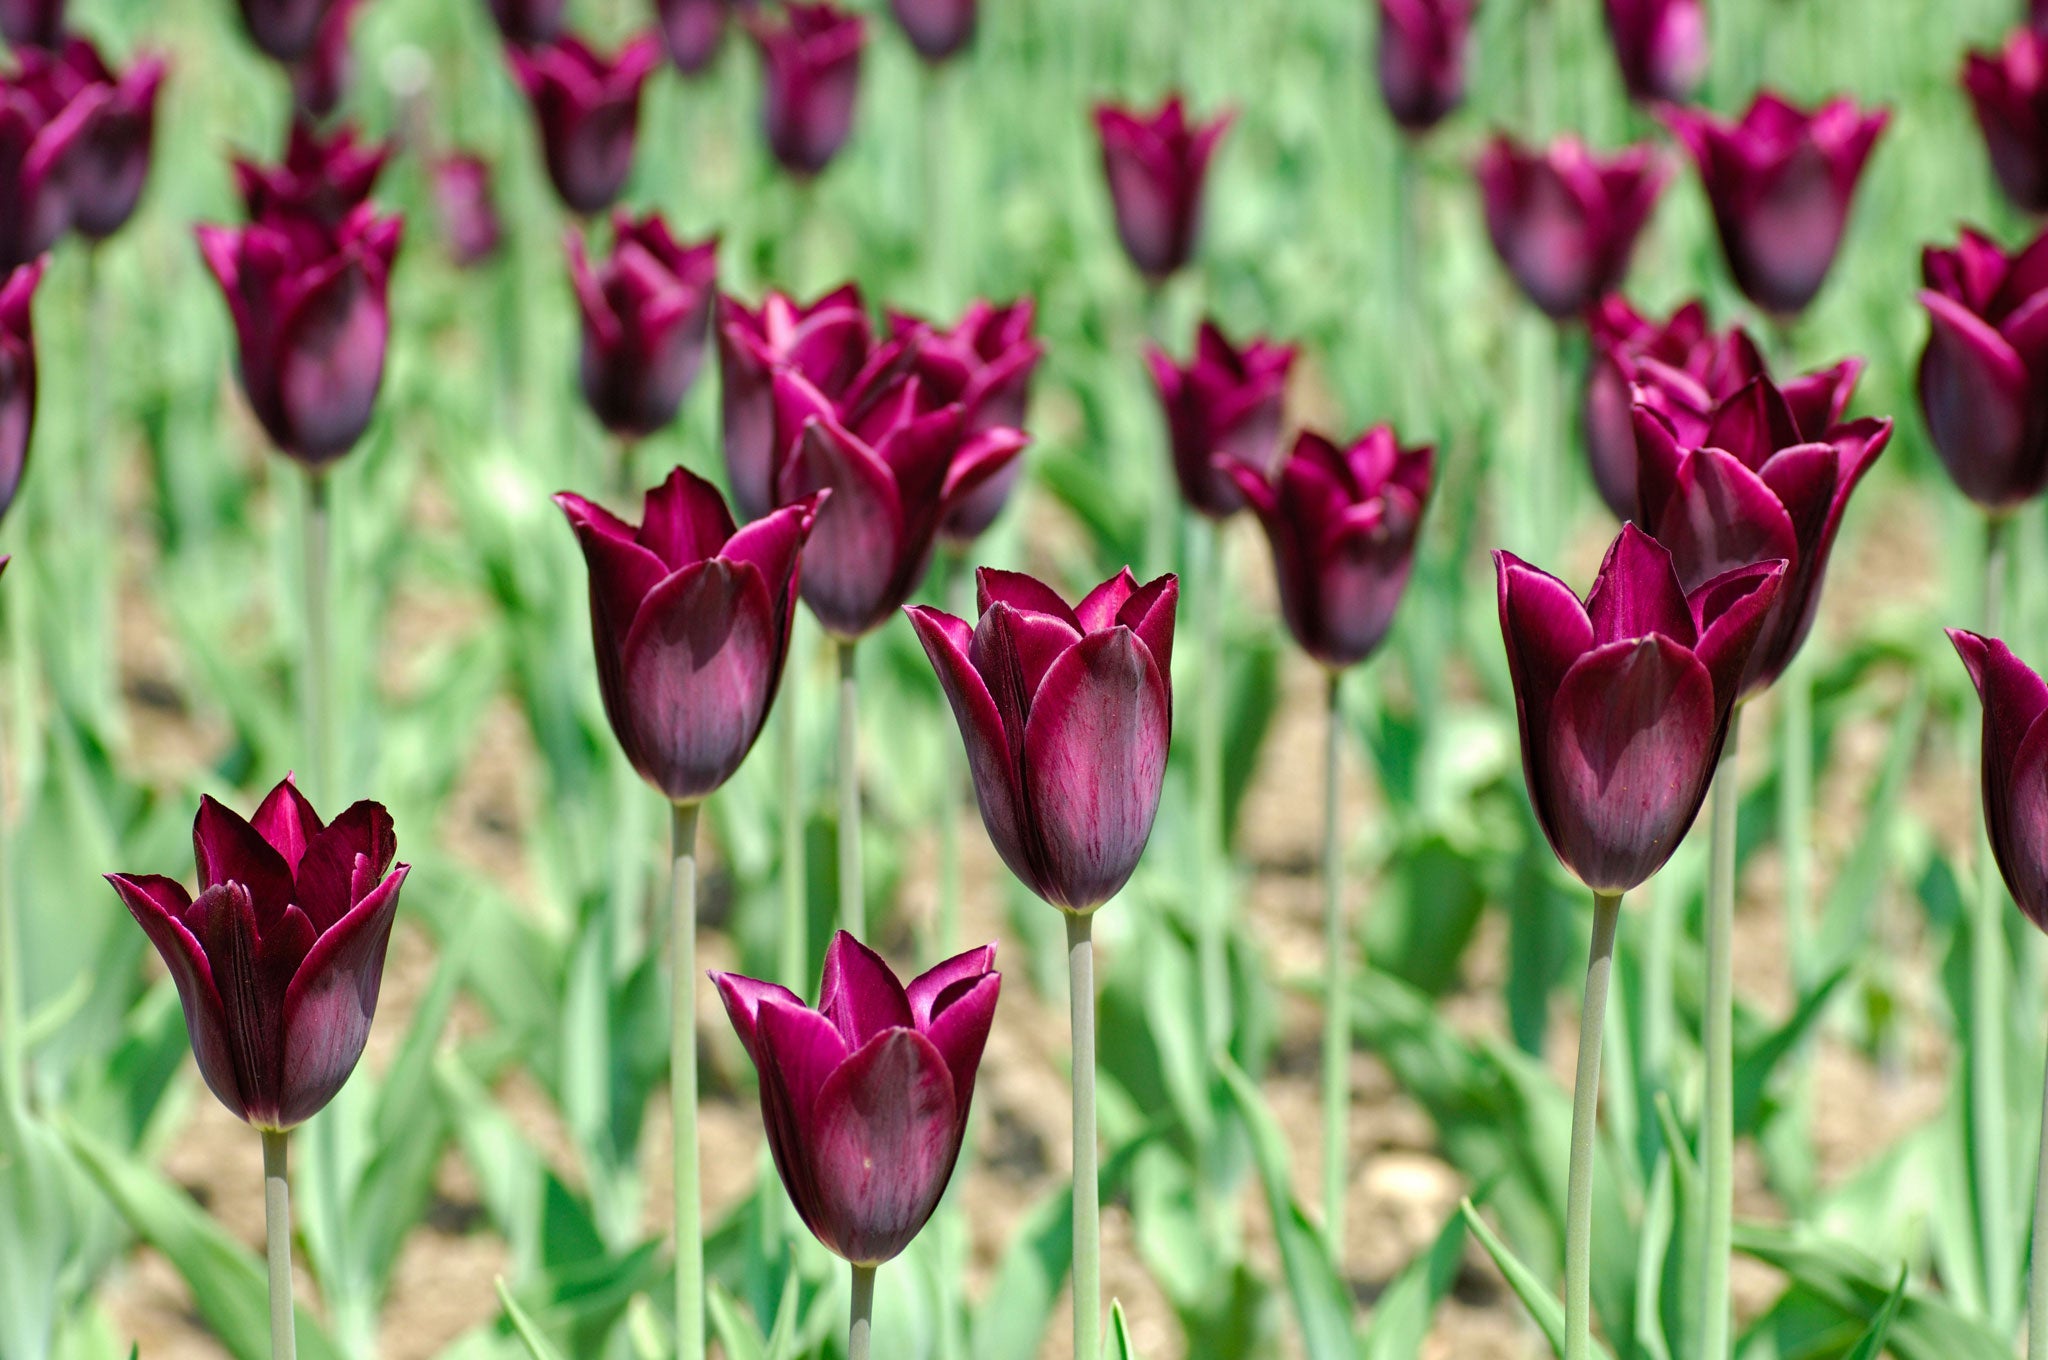 Purple reign: The 'Havran' tulip